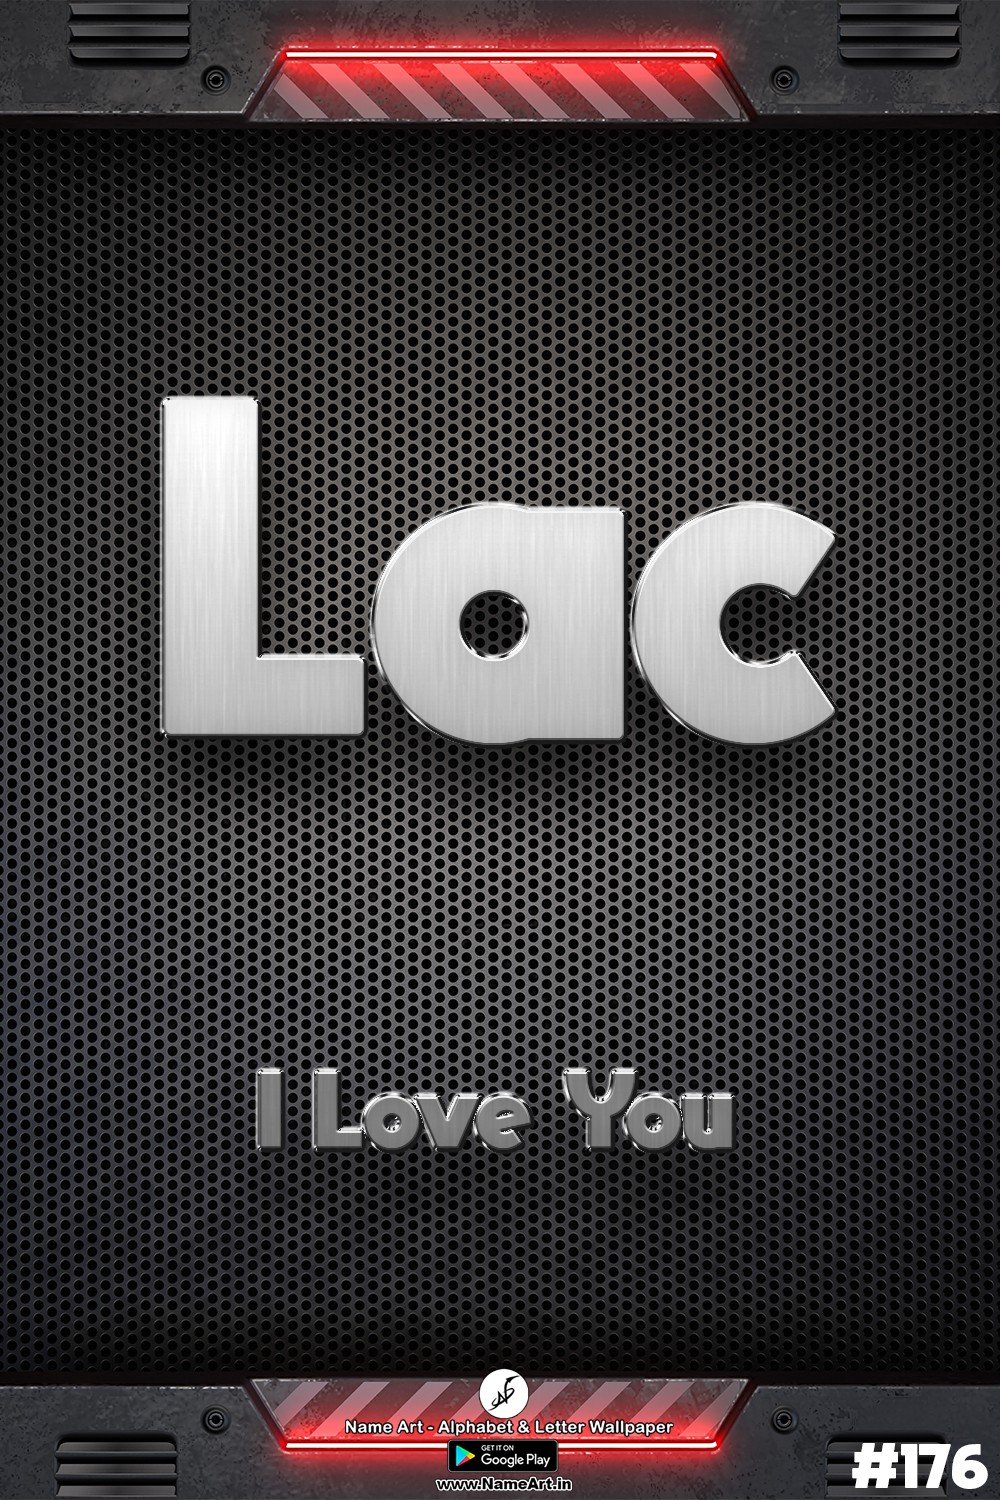 Lac | Whatsapp Status Lac | Happy Birthday Lac !! | New Whatsapp Status Lac Images |